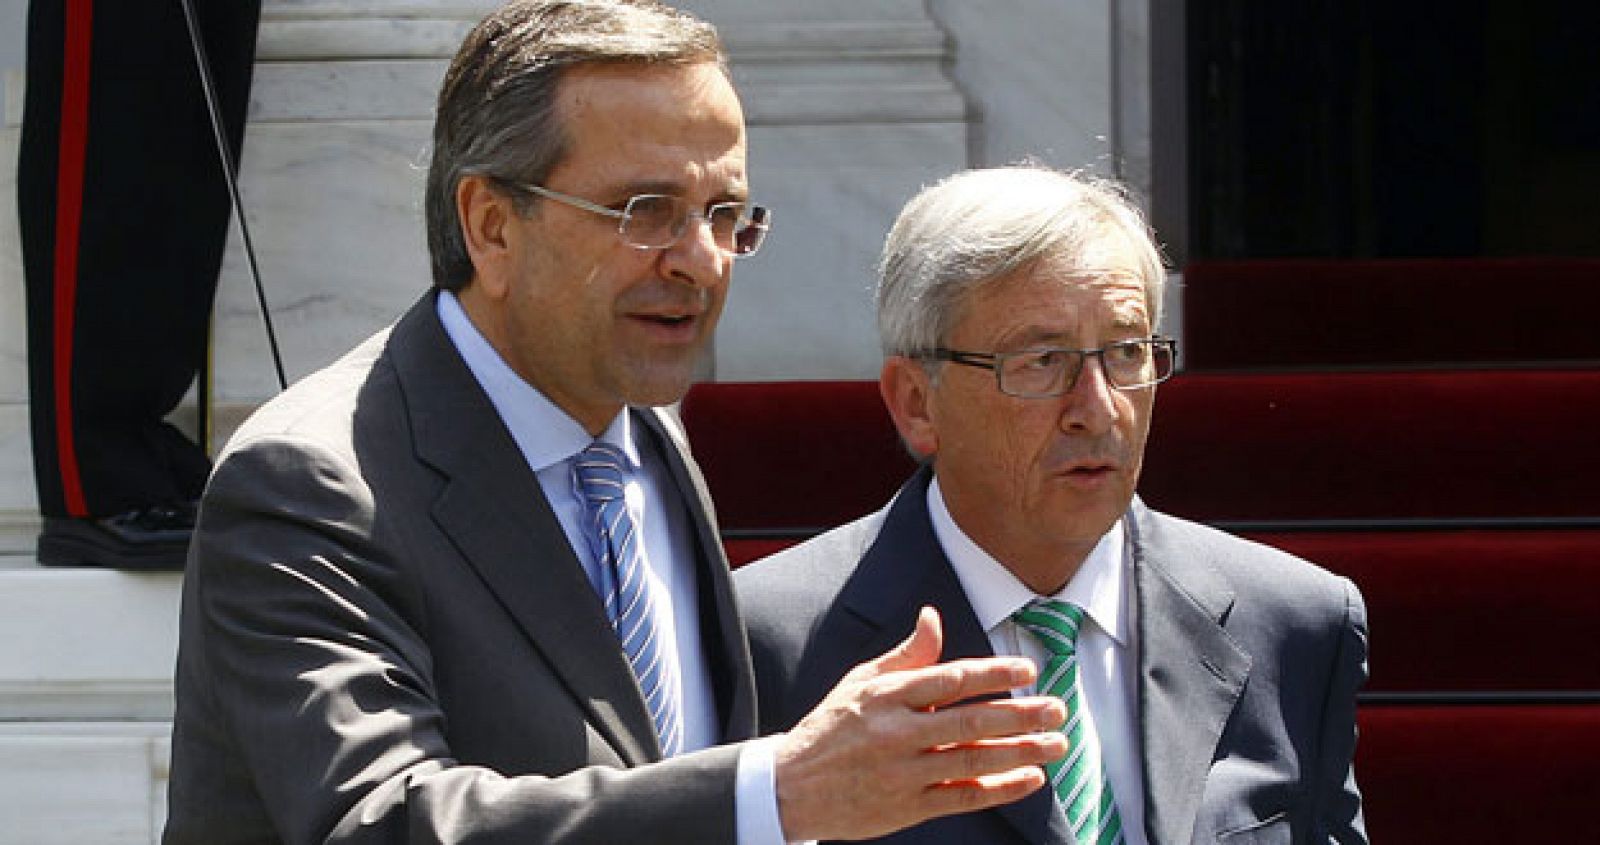 El jefe de Gobierno griego, Andonis Samarás, y el primer ministro luxemburgués, Jean-Claude Juncker, tras su reunión en Atenas este martes.